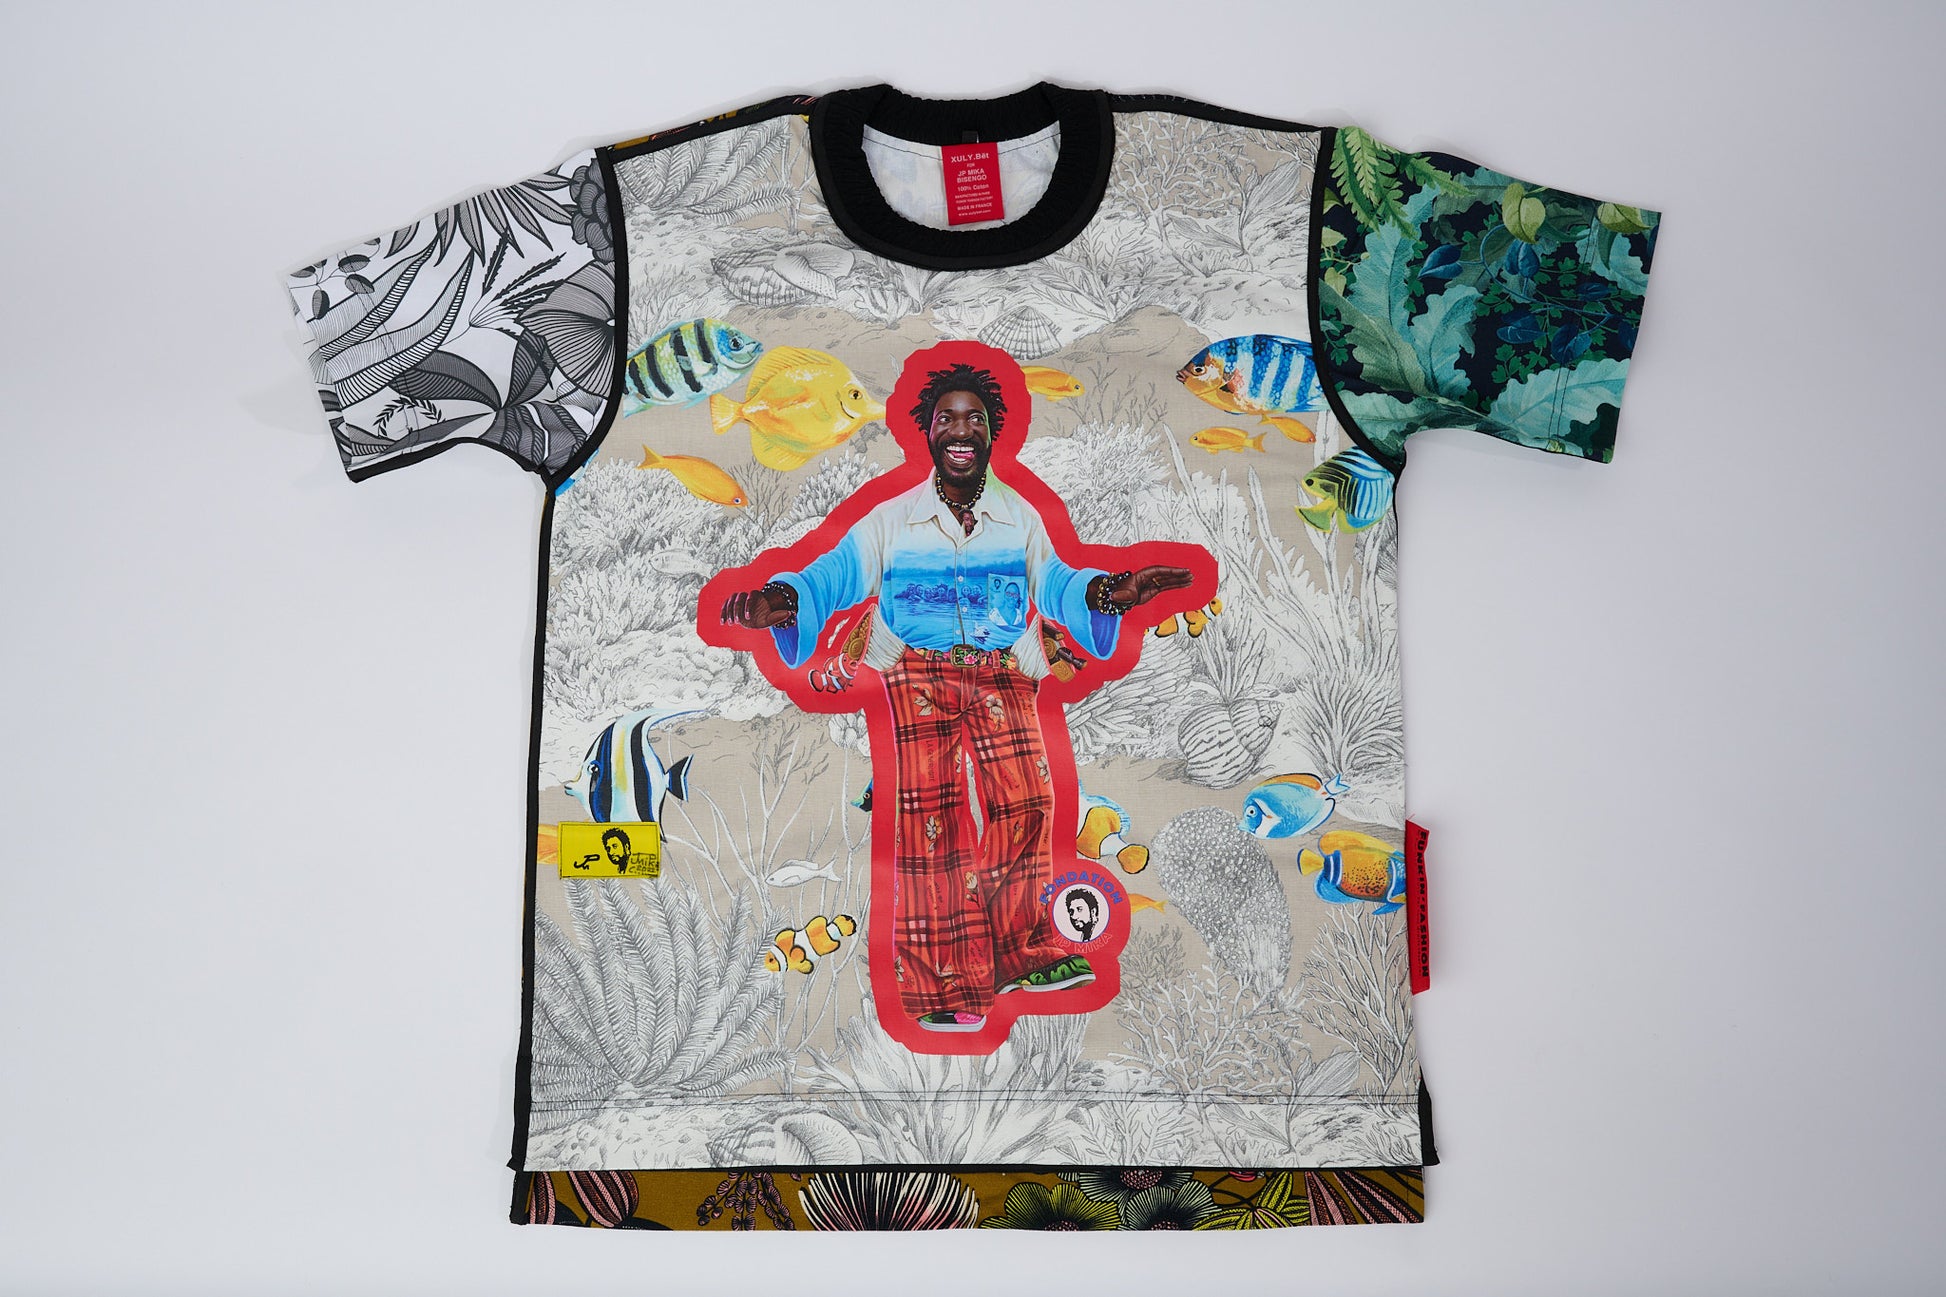 T-shirt BISENGO JP MIKA x XULY-BËT - Numéroté 5/65 - Taille S - Wearable-art inspiré du tableau "La Générosité" de la série de toiles BISENGO de JP MIKA.